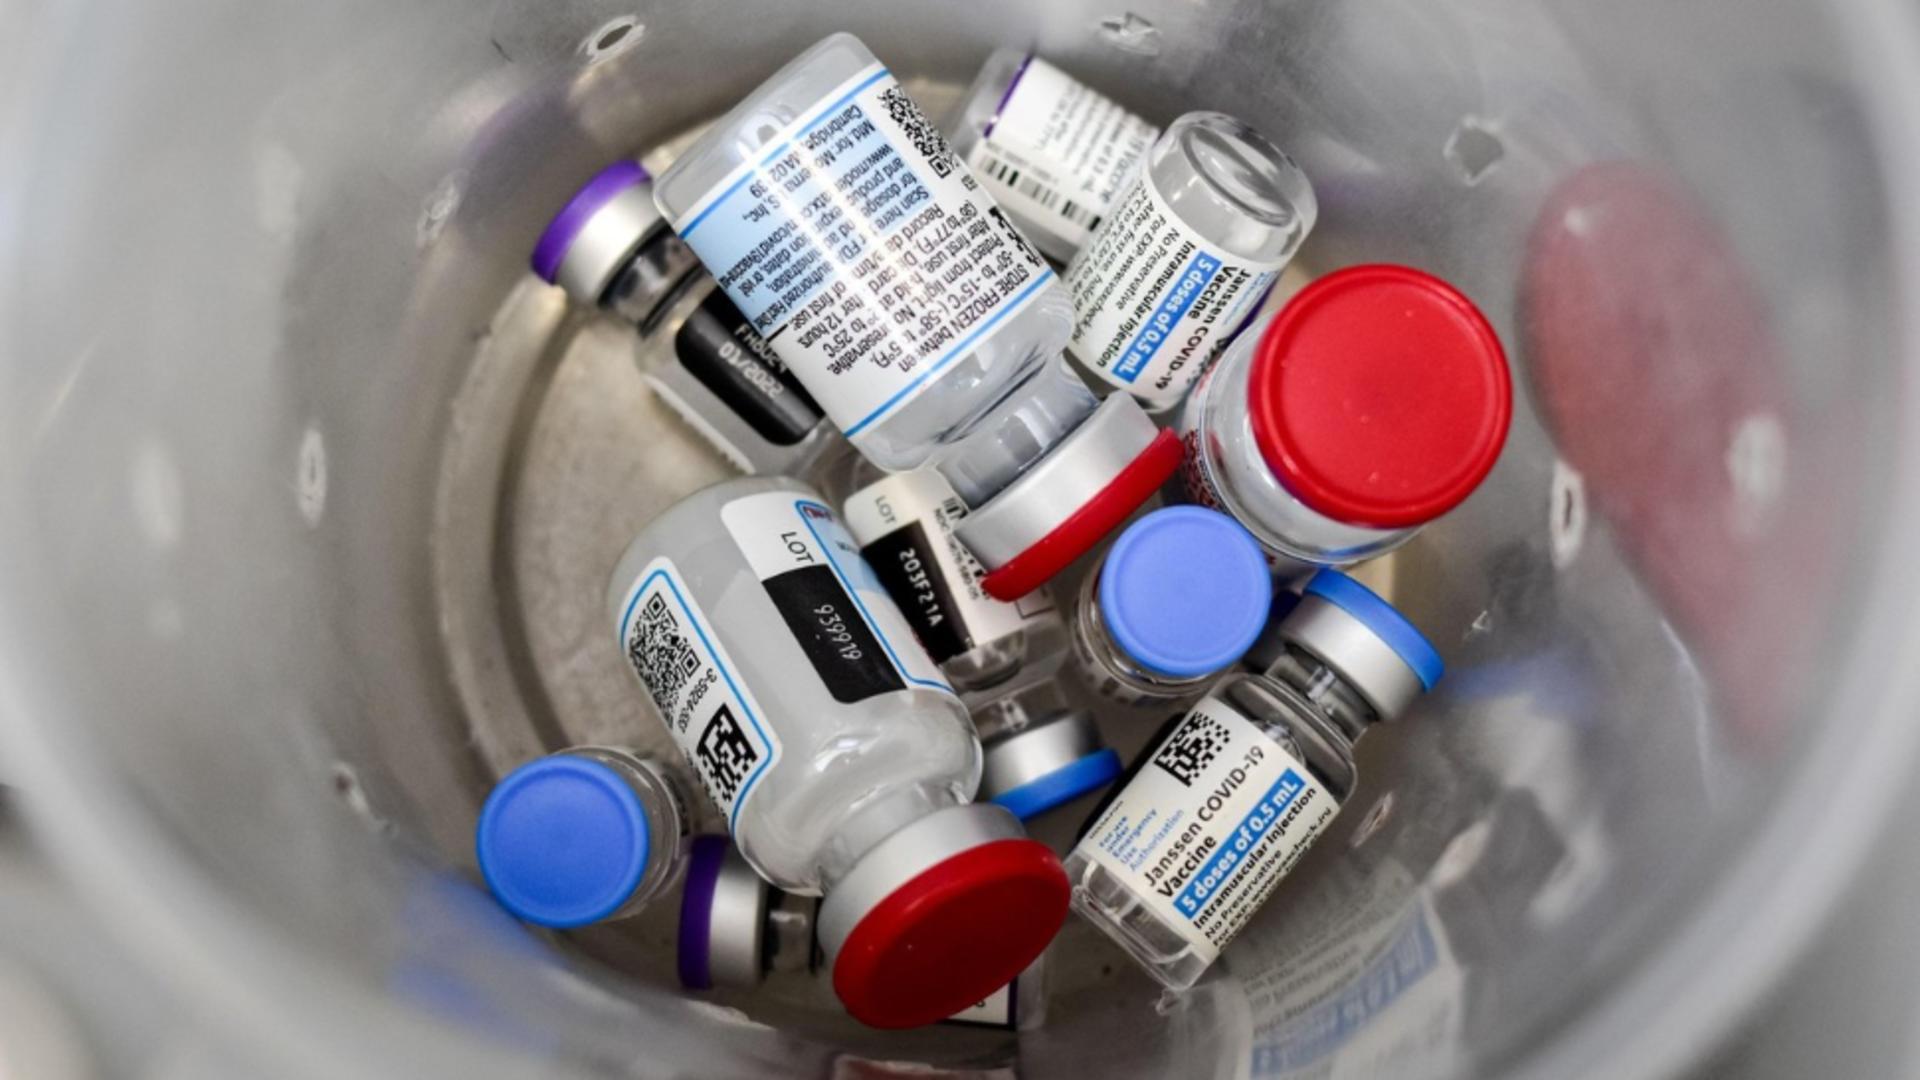 Furt la centrul de imunizare: mai multe doze de vaccin anti-Covid au dispărut / Foto: Profi Media